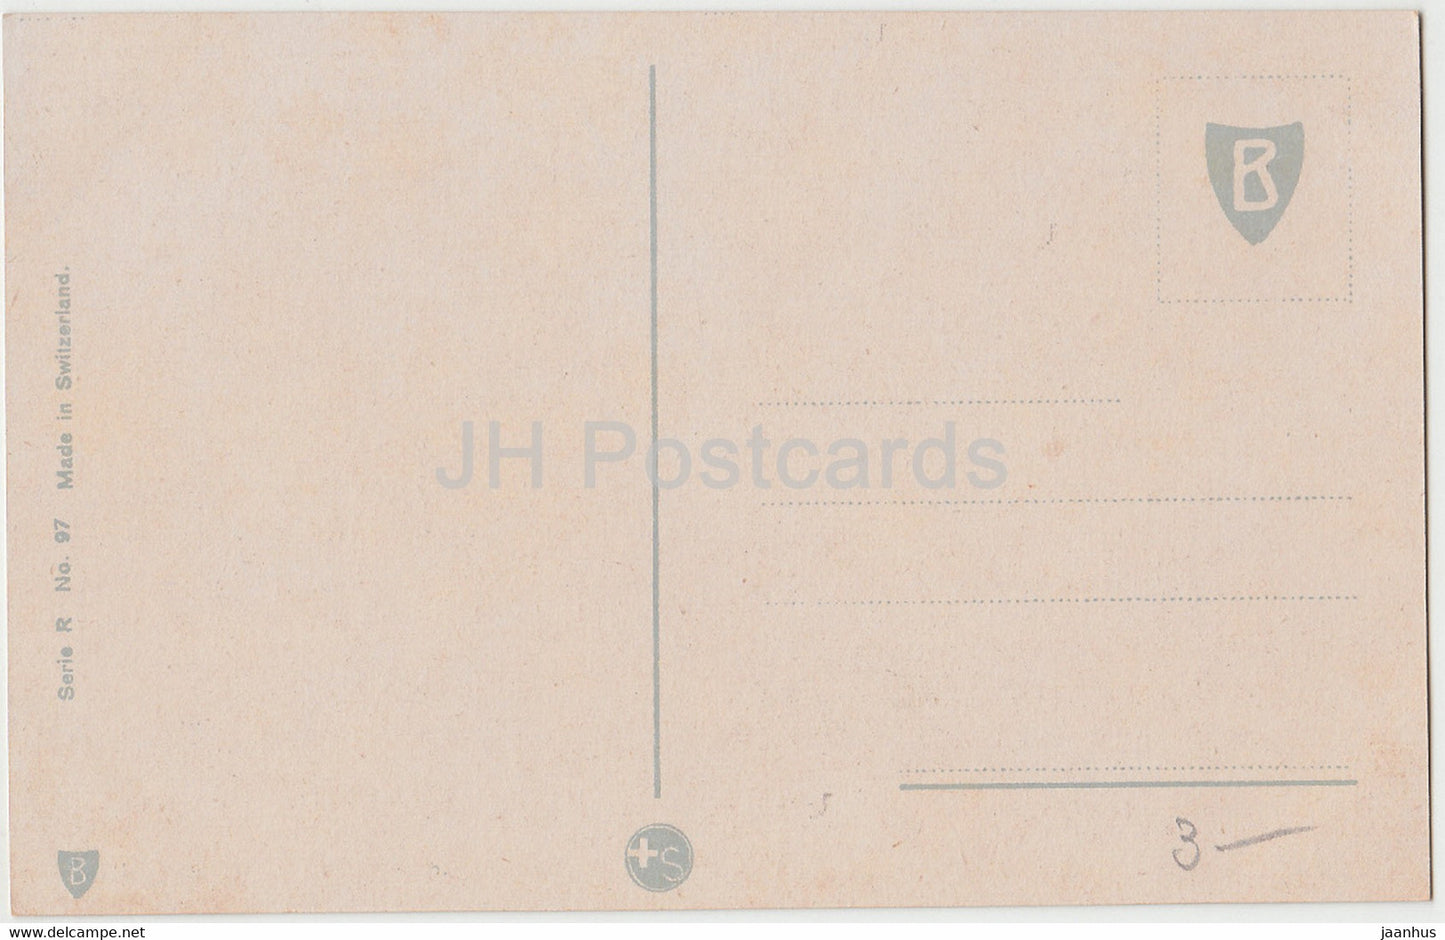 rosa Rose - Blumen - Serie C Nr. 97 - alte Postkarte - Schweiz - unbenutzt